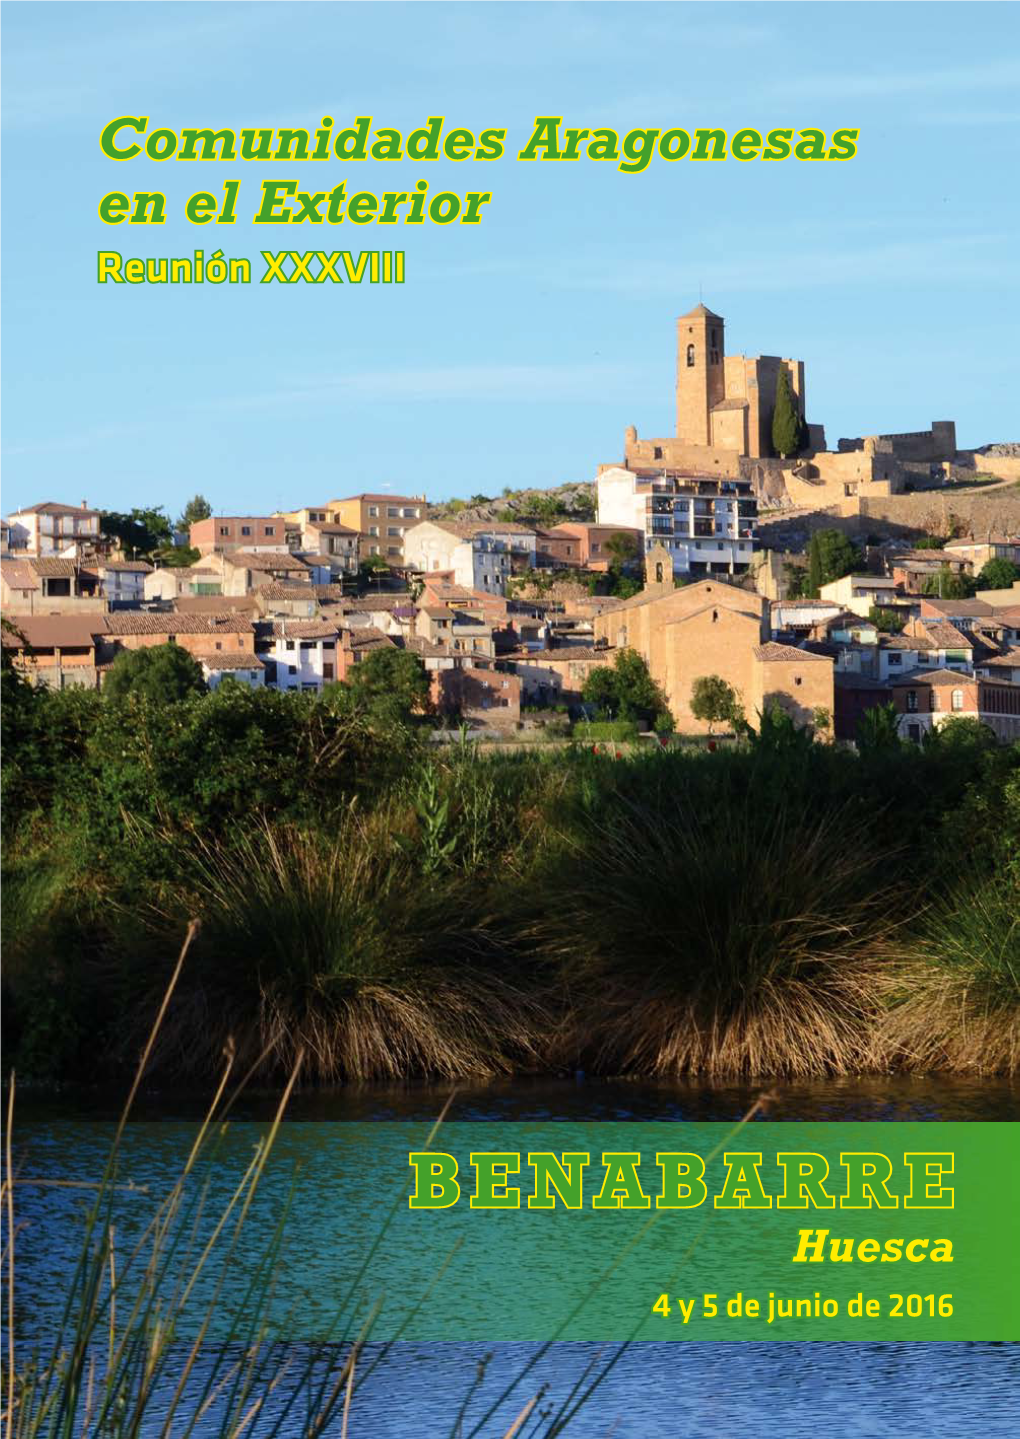 BENABARRE Huesca 4 Y 5 De Junio De 2016